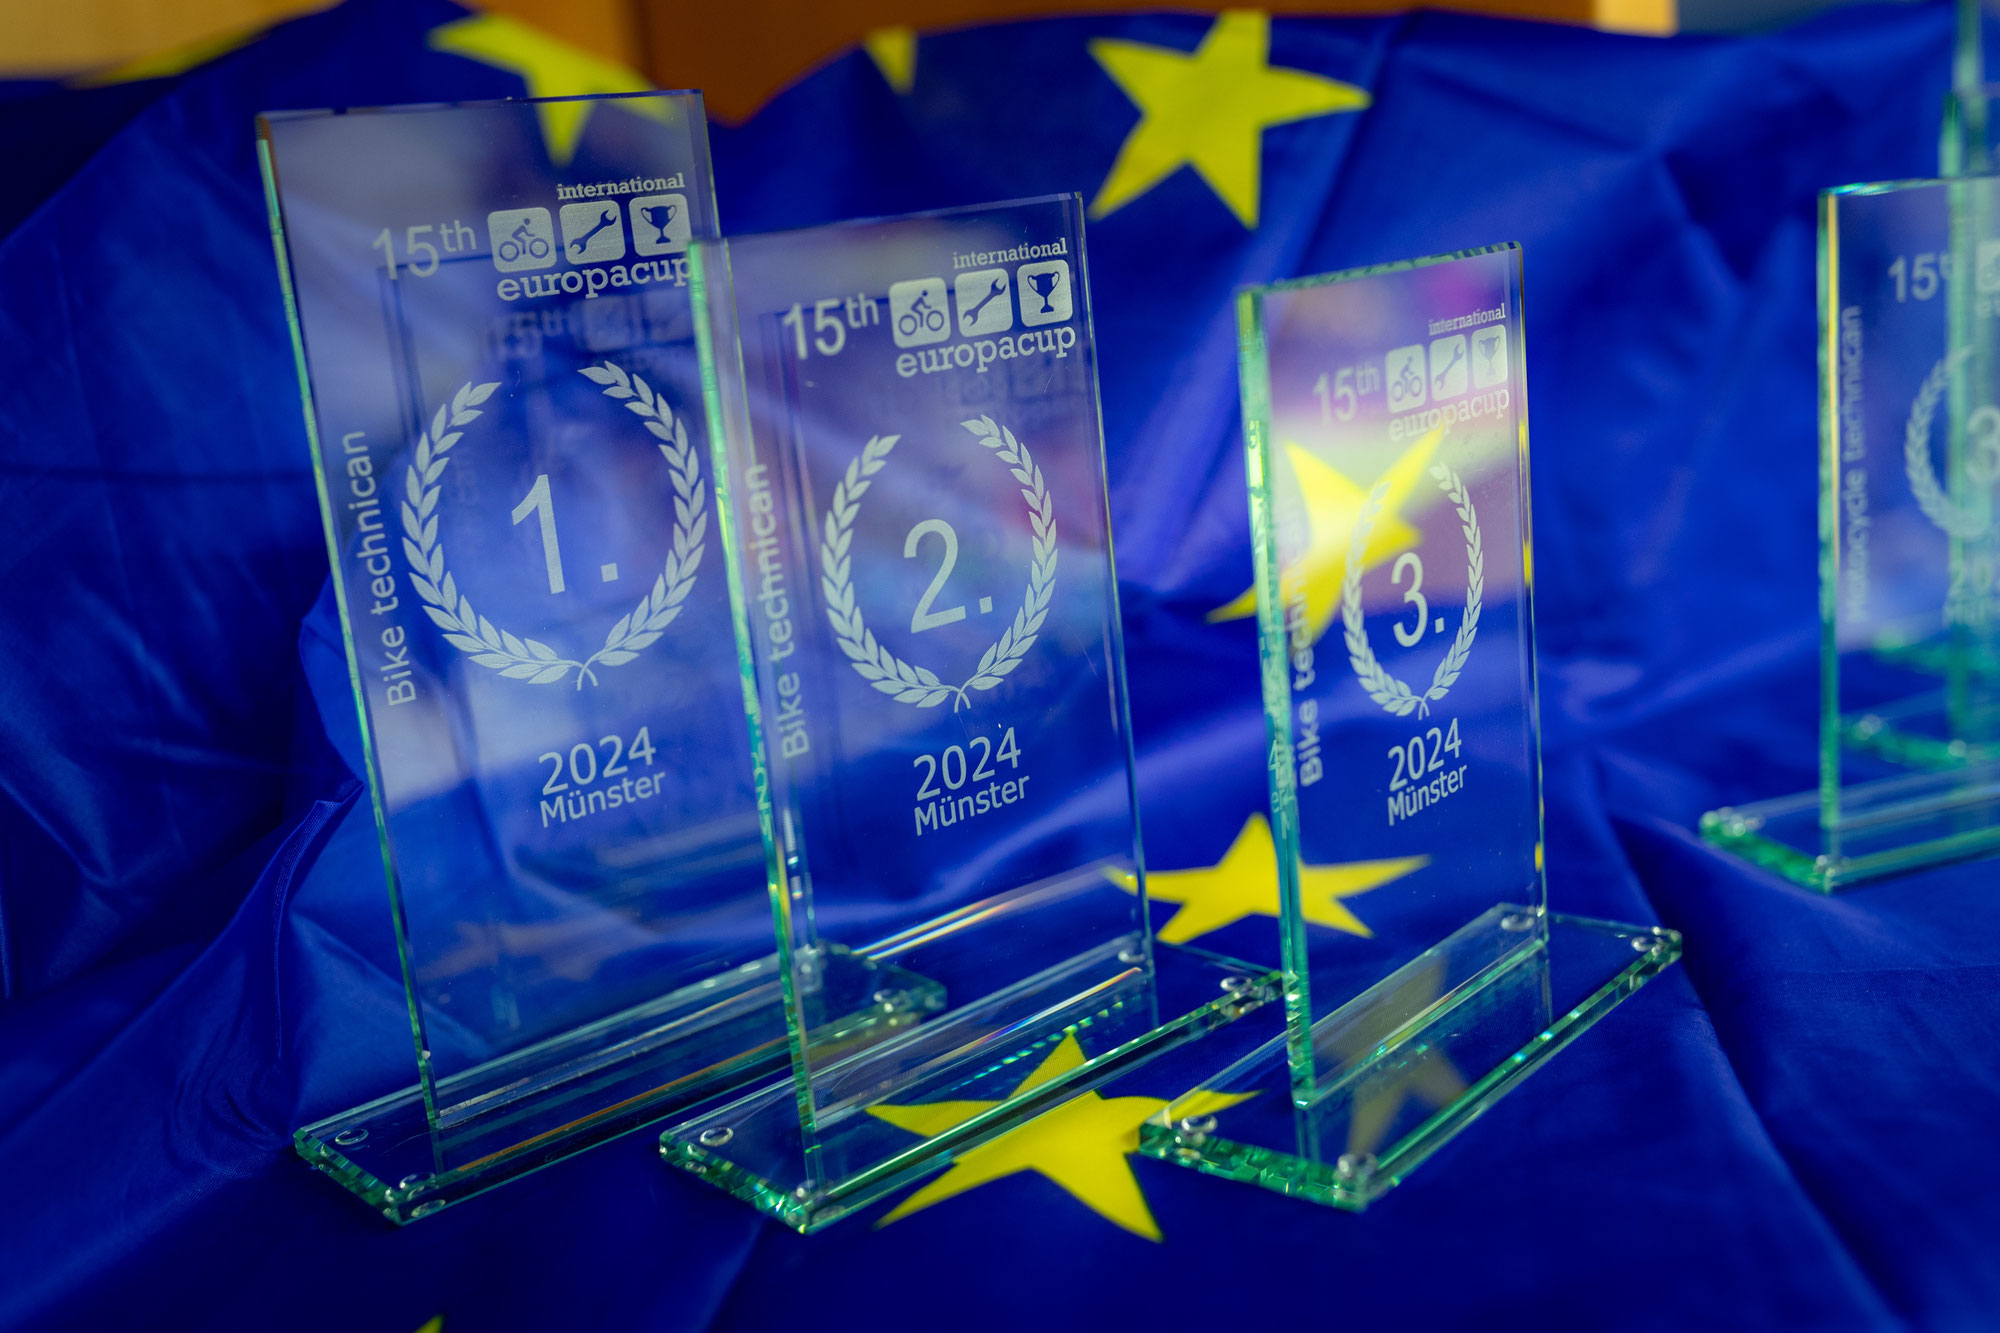 Europacup Zweirad 2024: Internationale Spitzenleistungen im Fokus